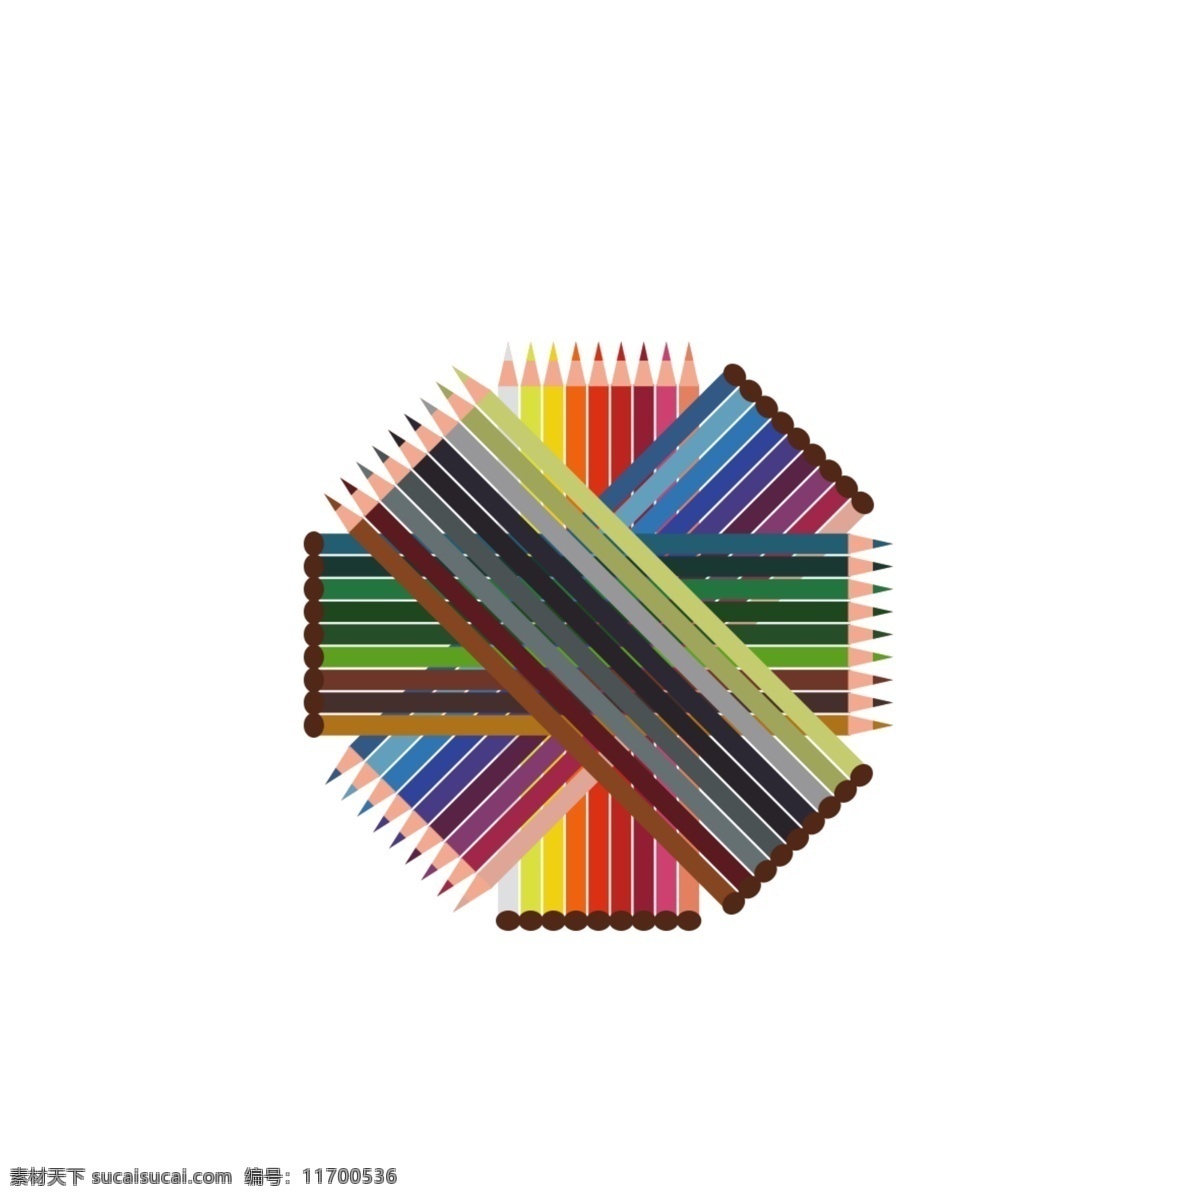 创意 手绘 绘画 彩 色彩 铅 铅笔 折叠 叠加 元素 彩铅 彩色 设计元素